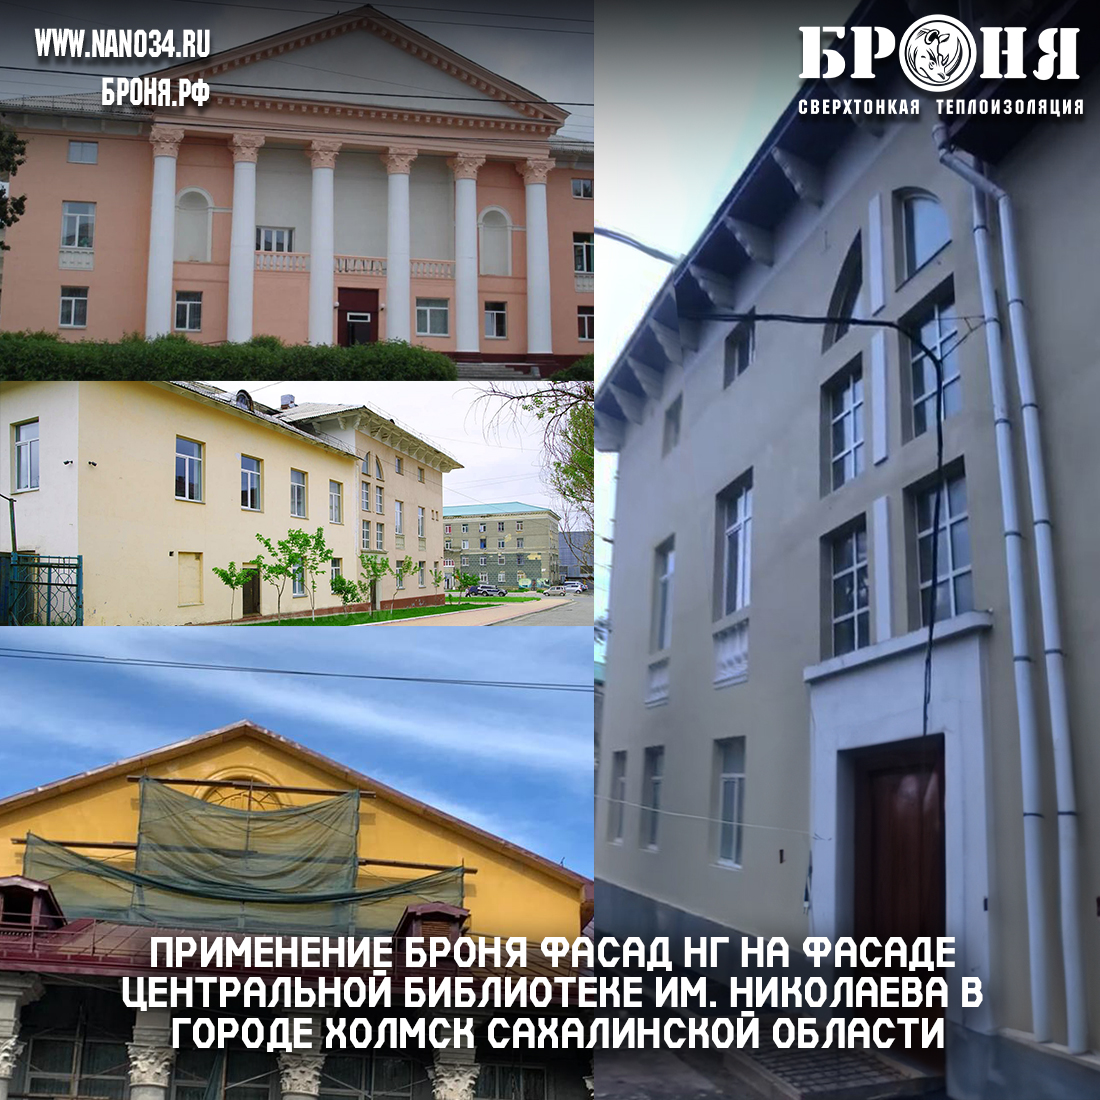 Применение Броня Фасад НГ на фасаде центральной библиотеке им. Николаева в городе Холмск Сахалинской области (фото и видео)